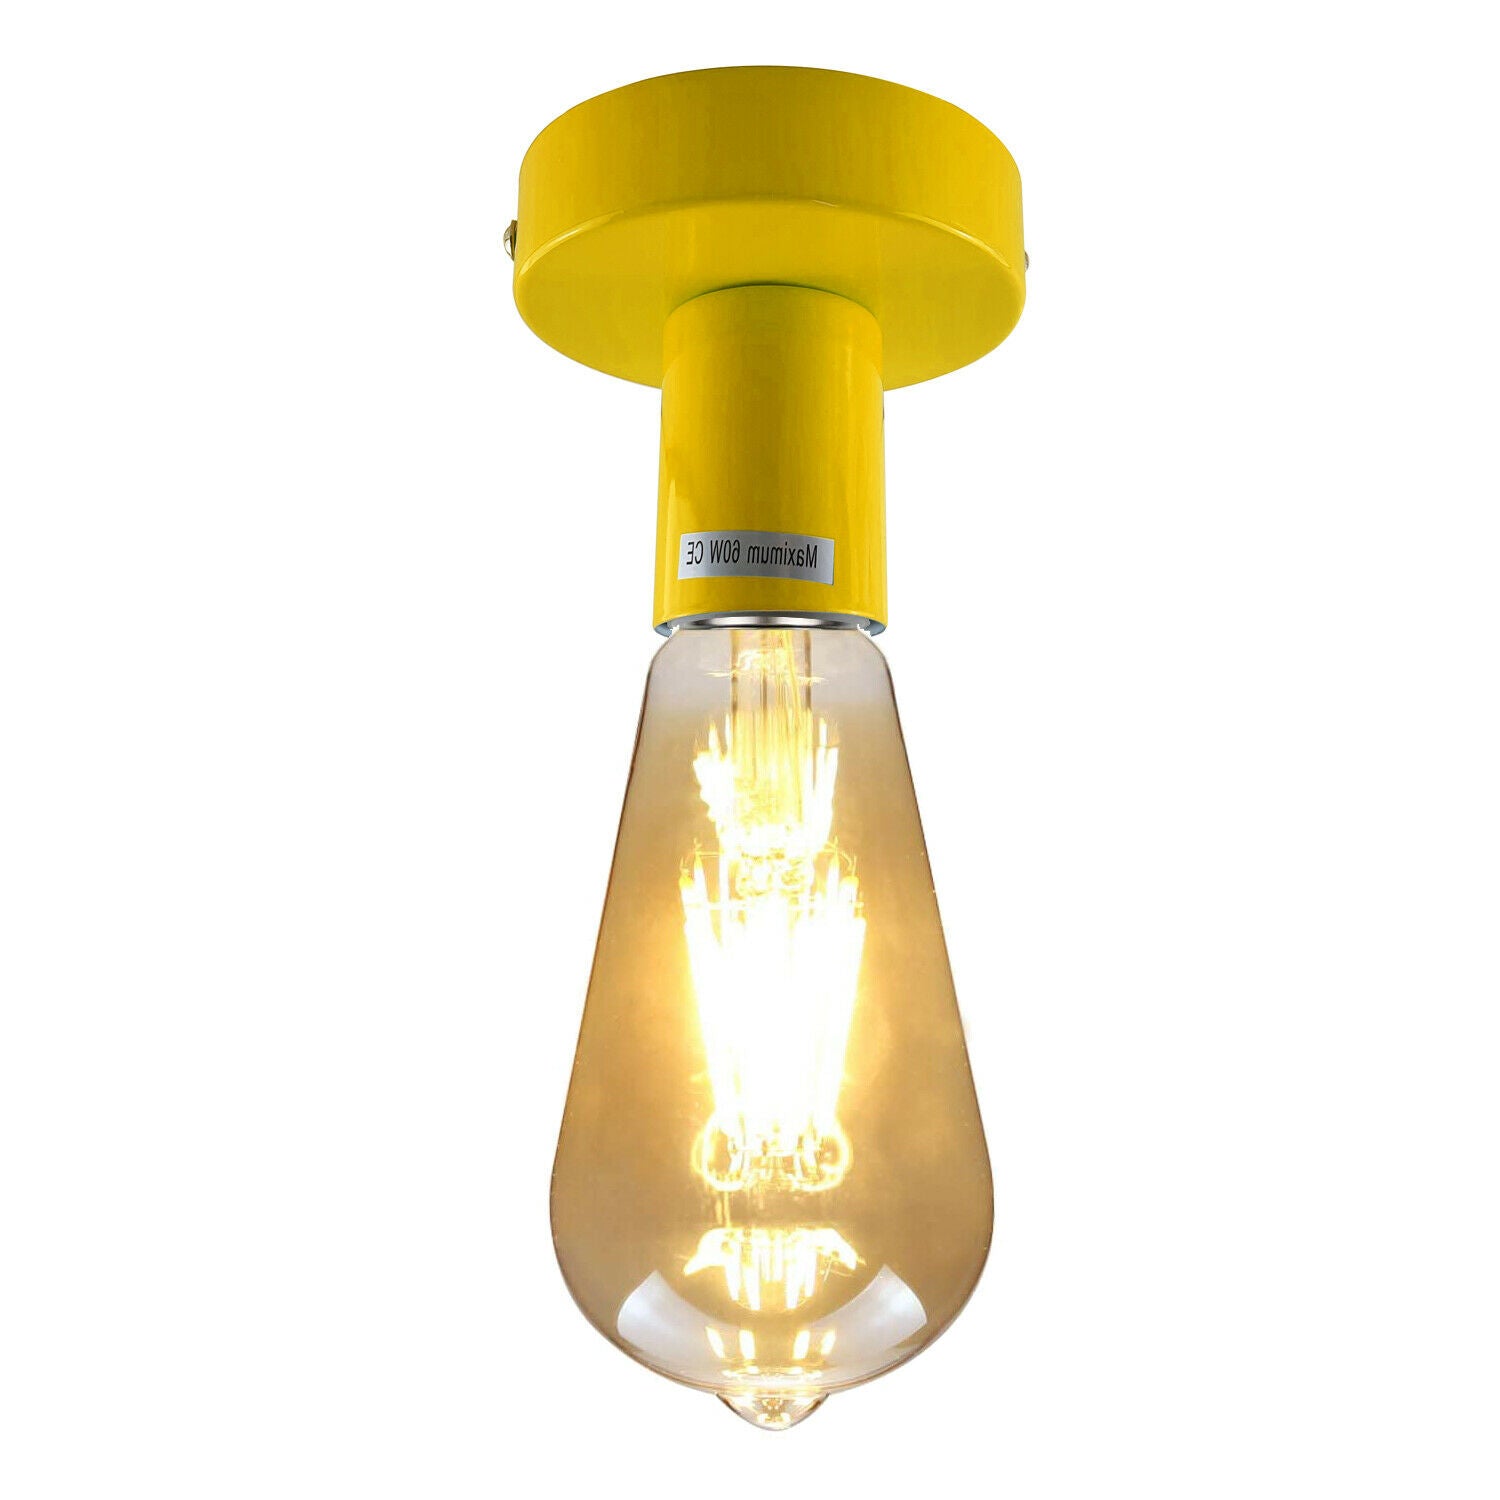 Yellow Flush Mount Ceiling Light Fitting~1685 - LEDSone UK Ltd